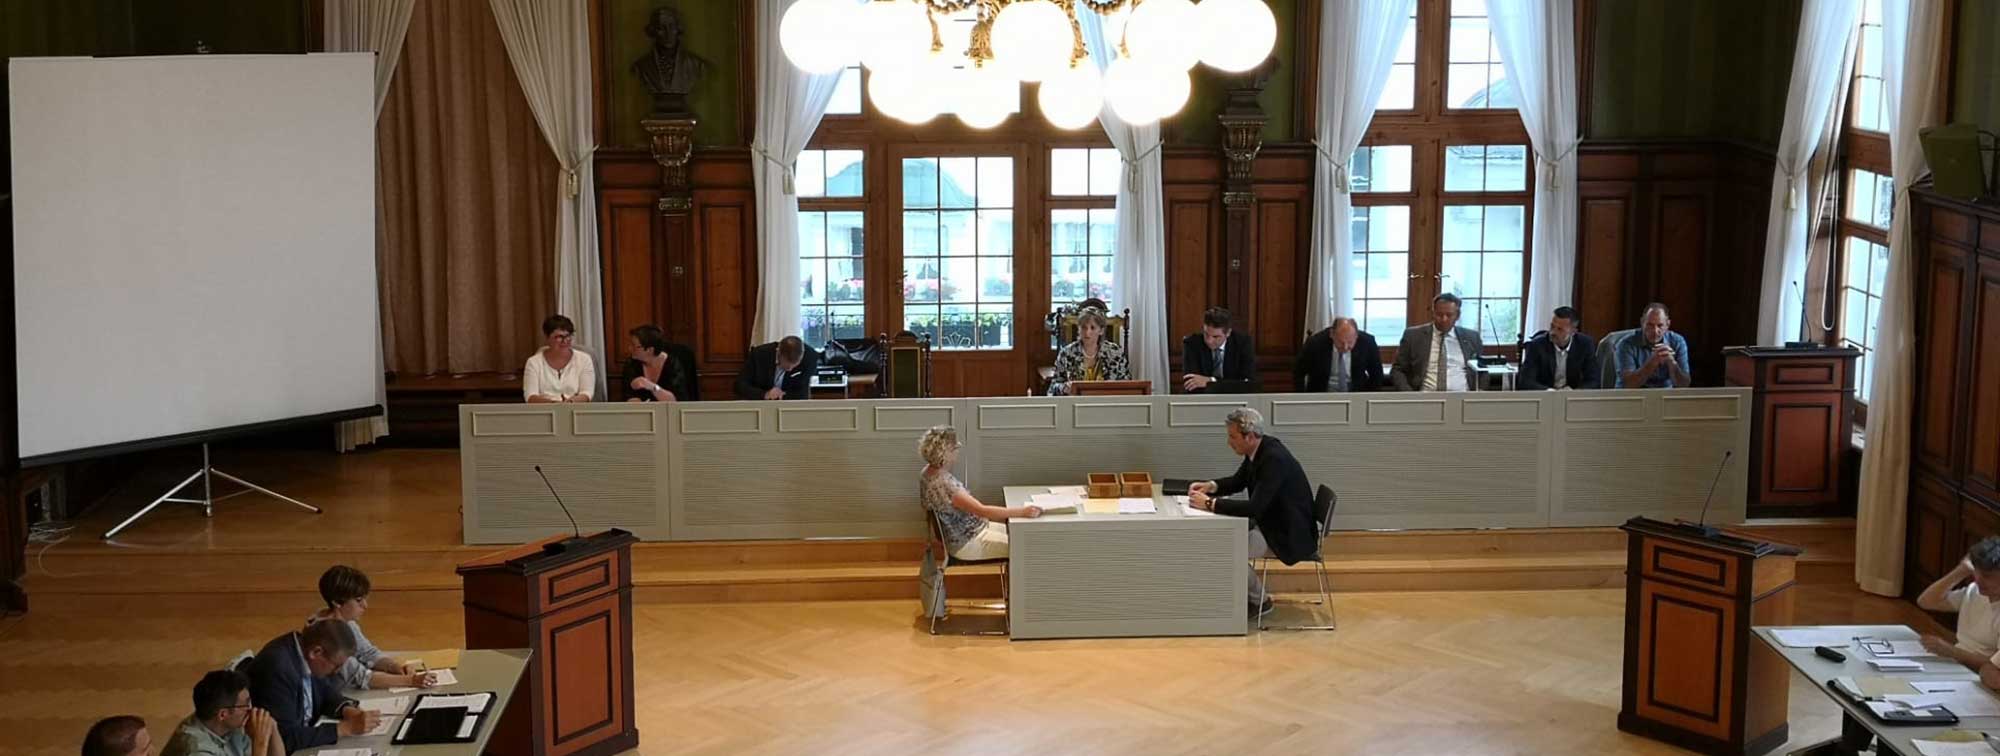 Parlamentssitzung im Rathaussaal von Weinfelden